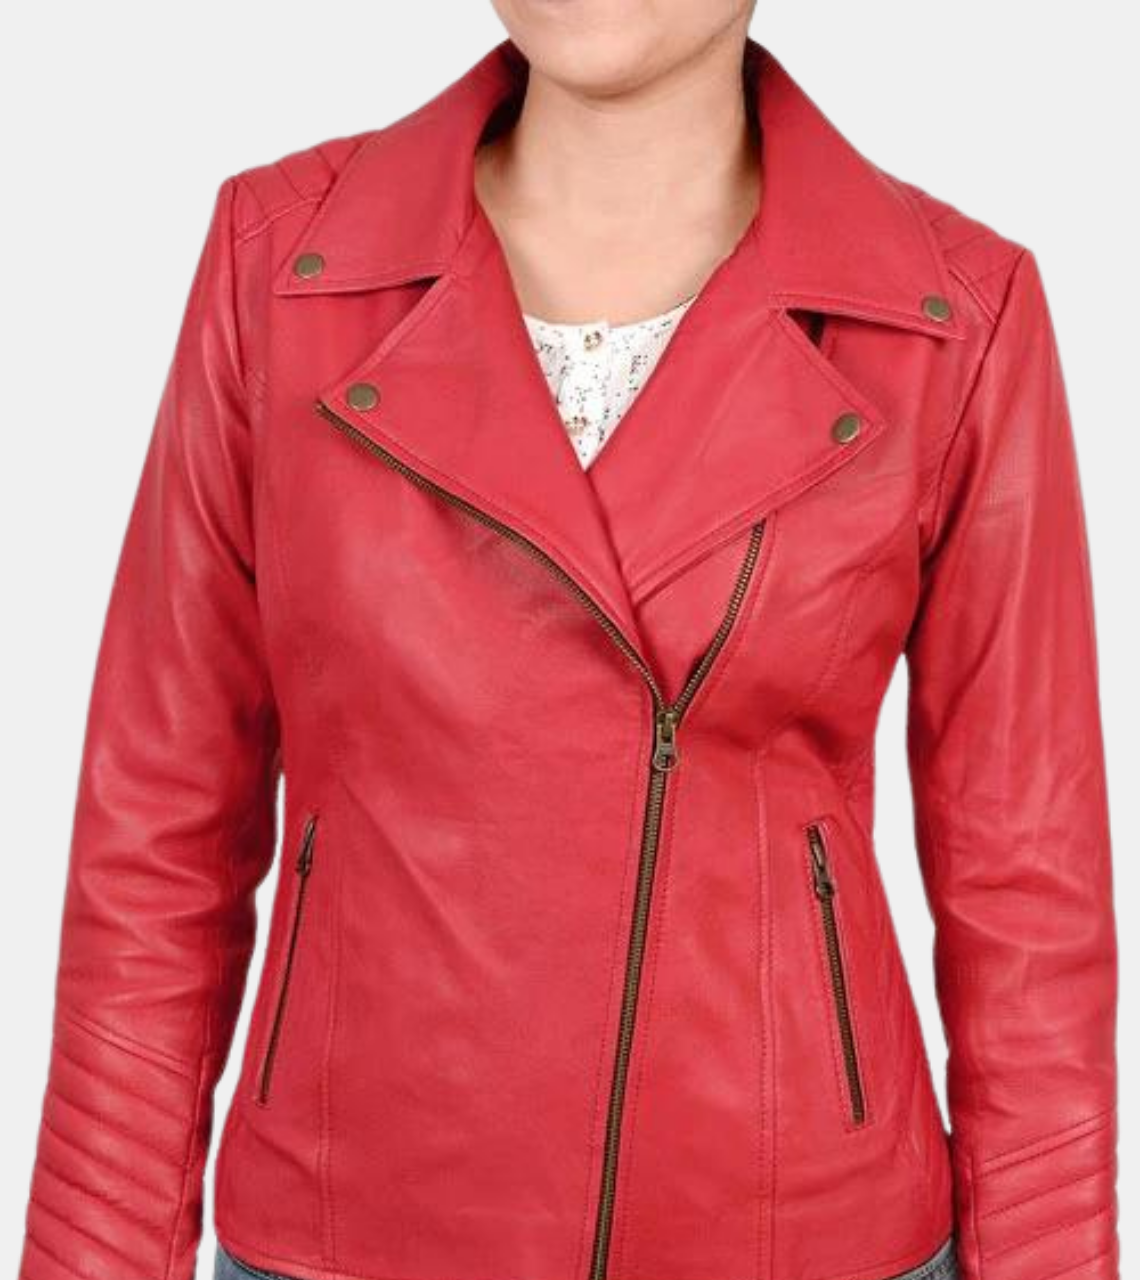 Hearste Women's Red Biker's Leather Jacket